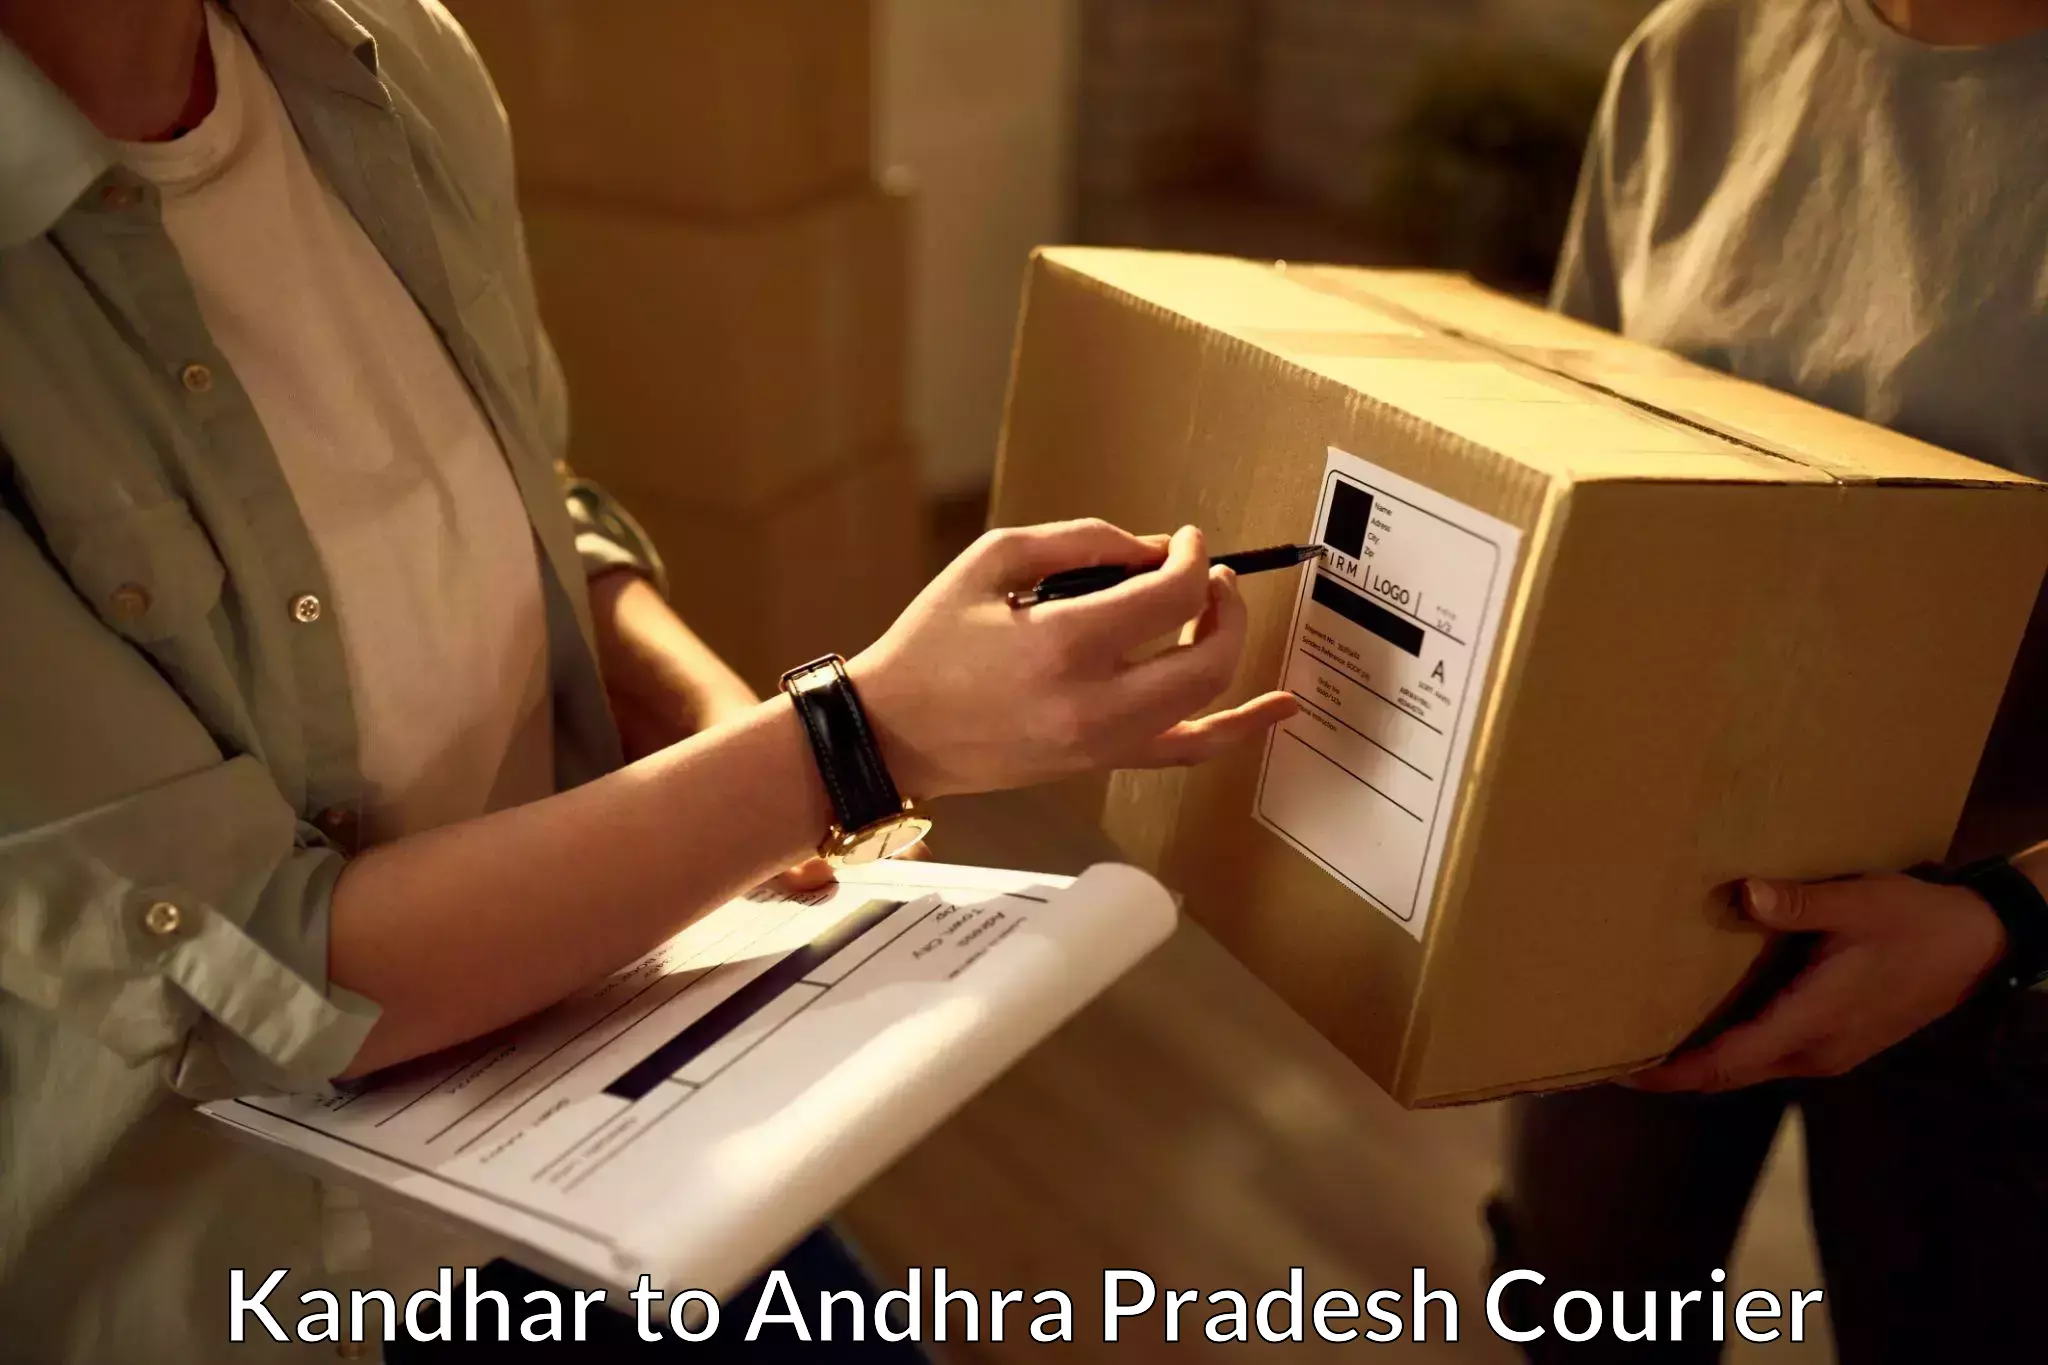 Cargo courier service Kandhar to Machilipatnam